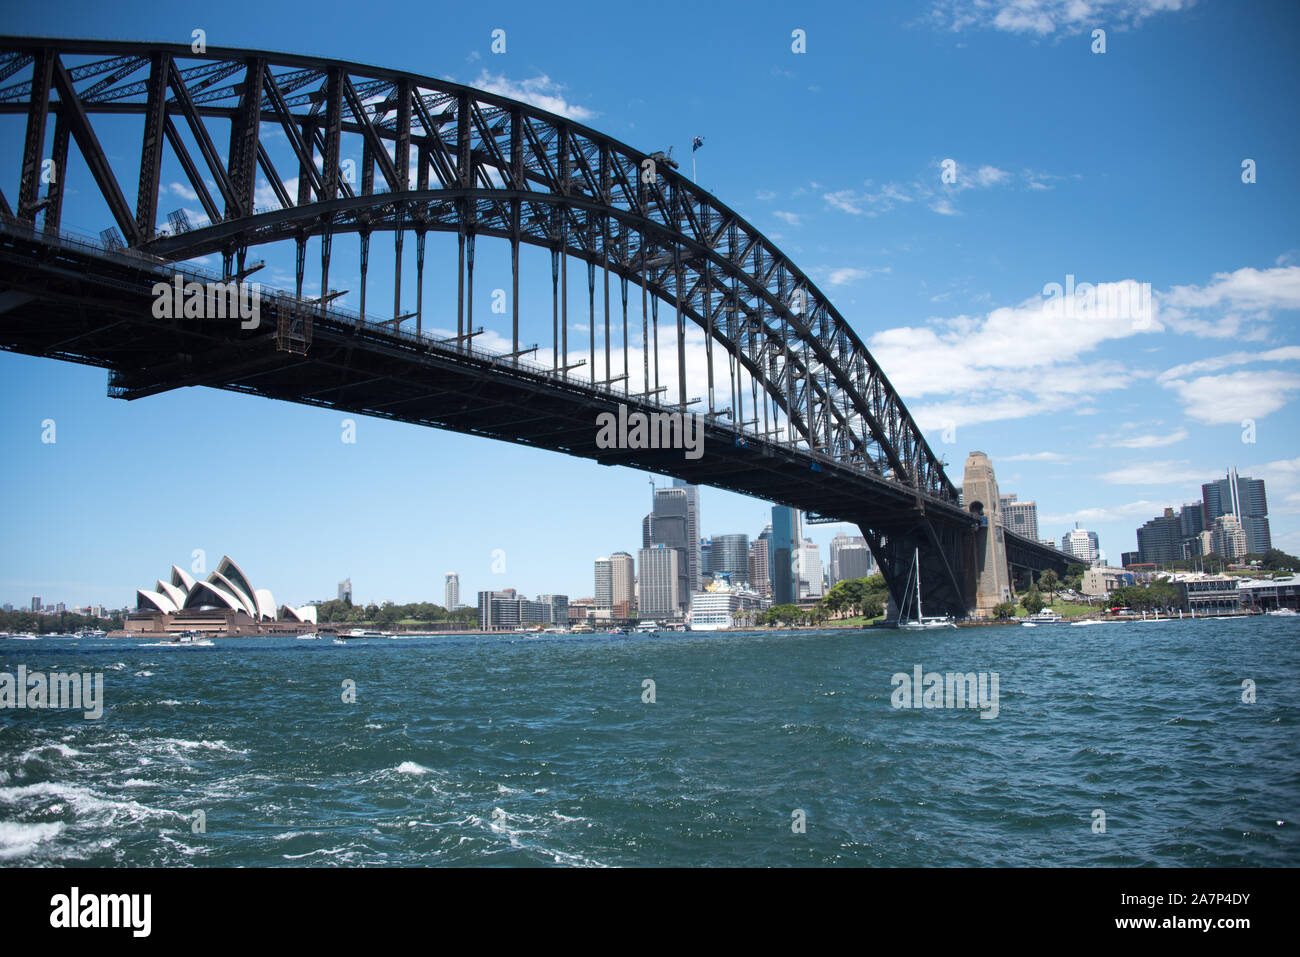 Sydney Harbour Bridge come visto dalla barca con opera in background Foto Stock